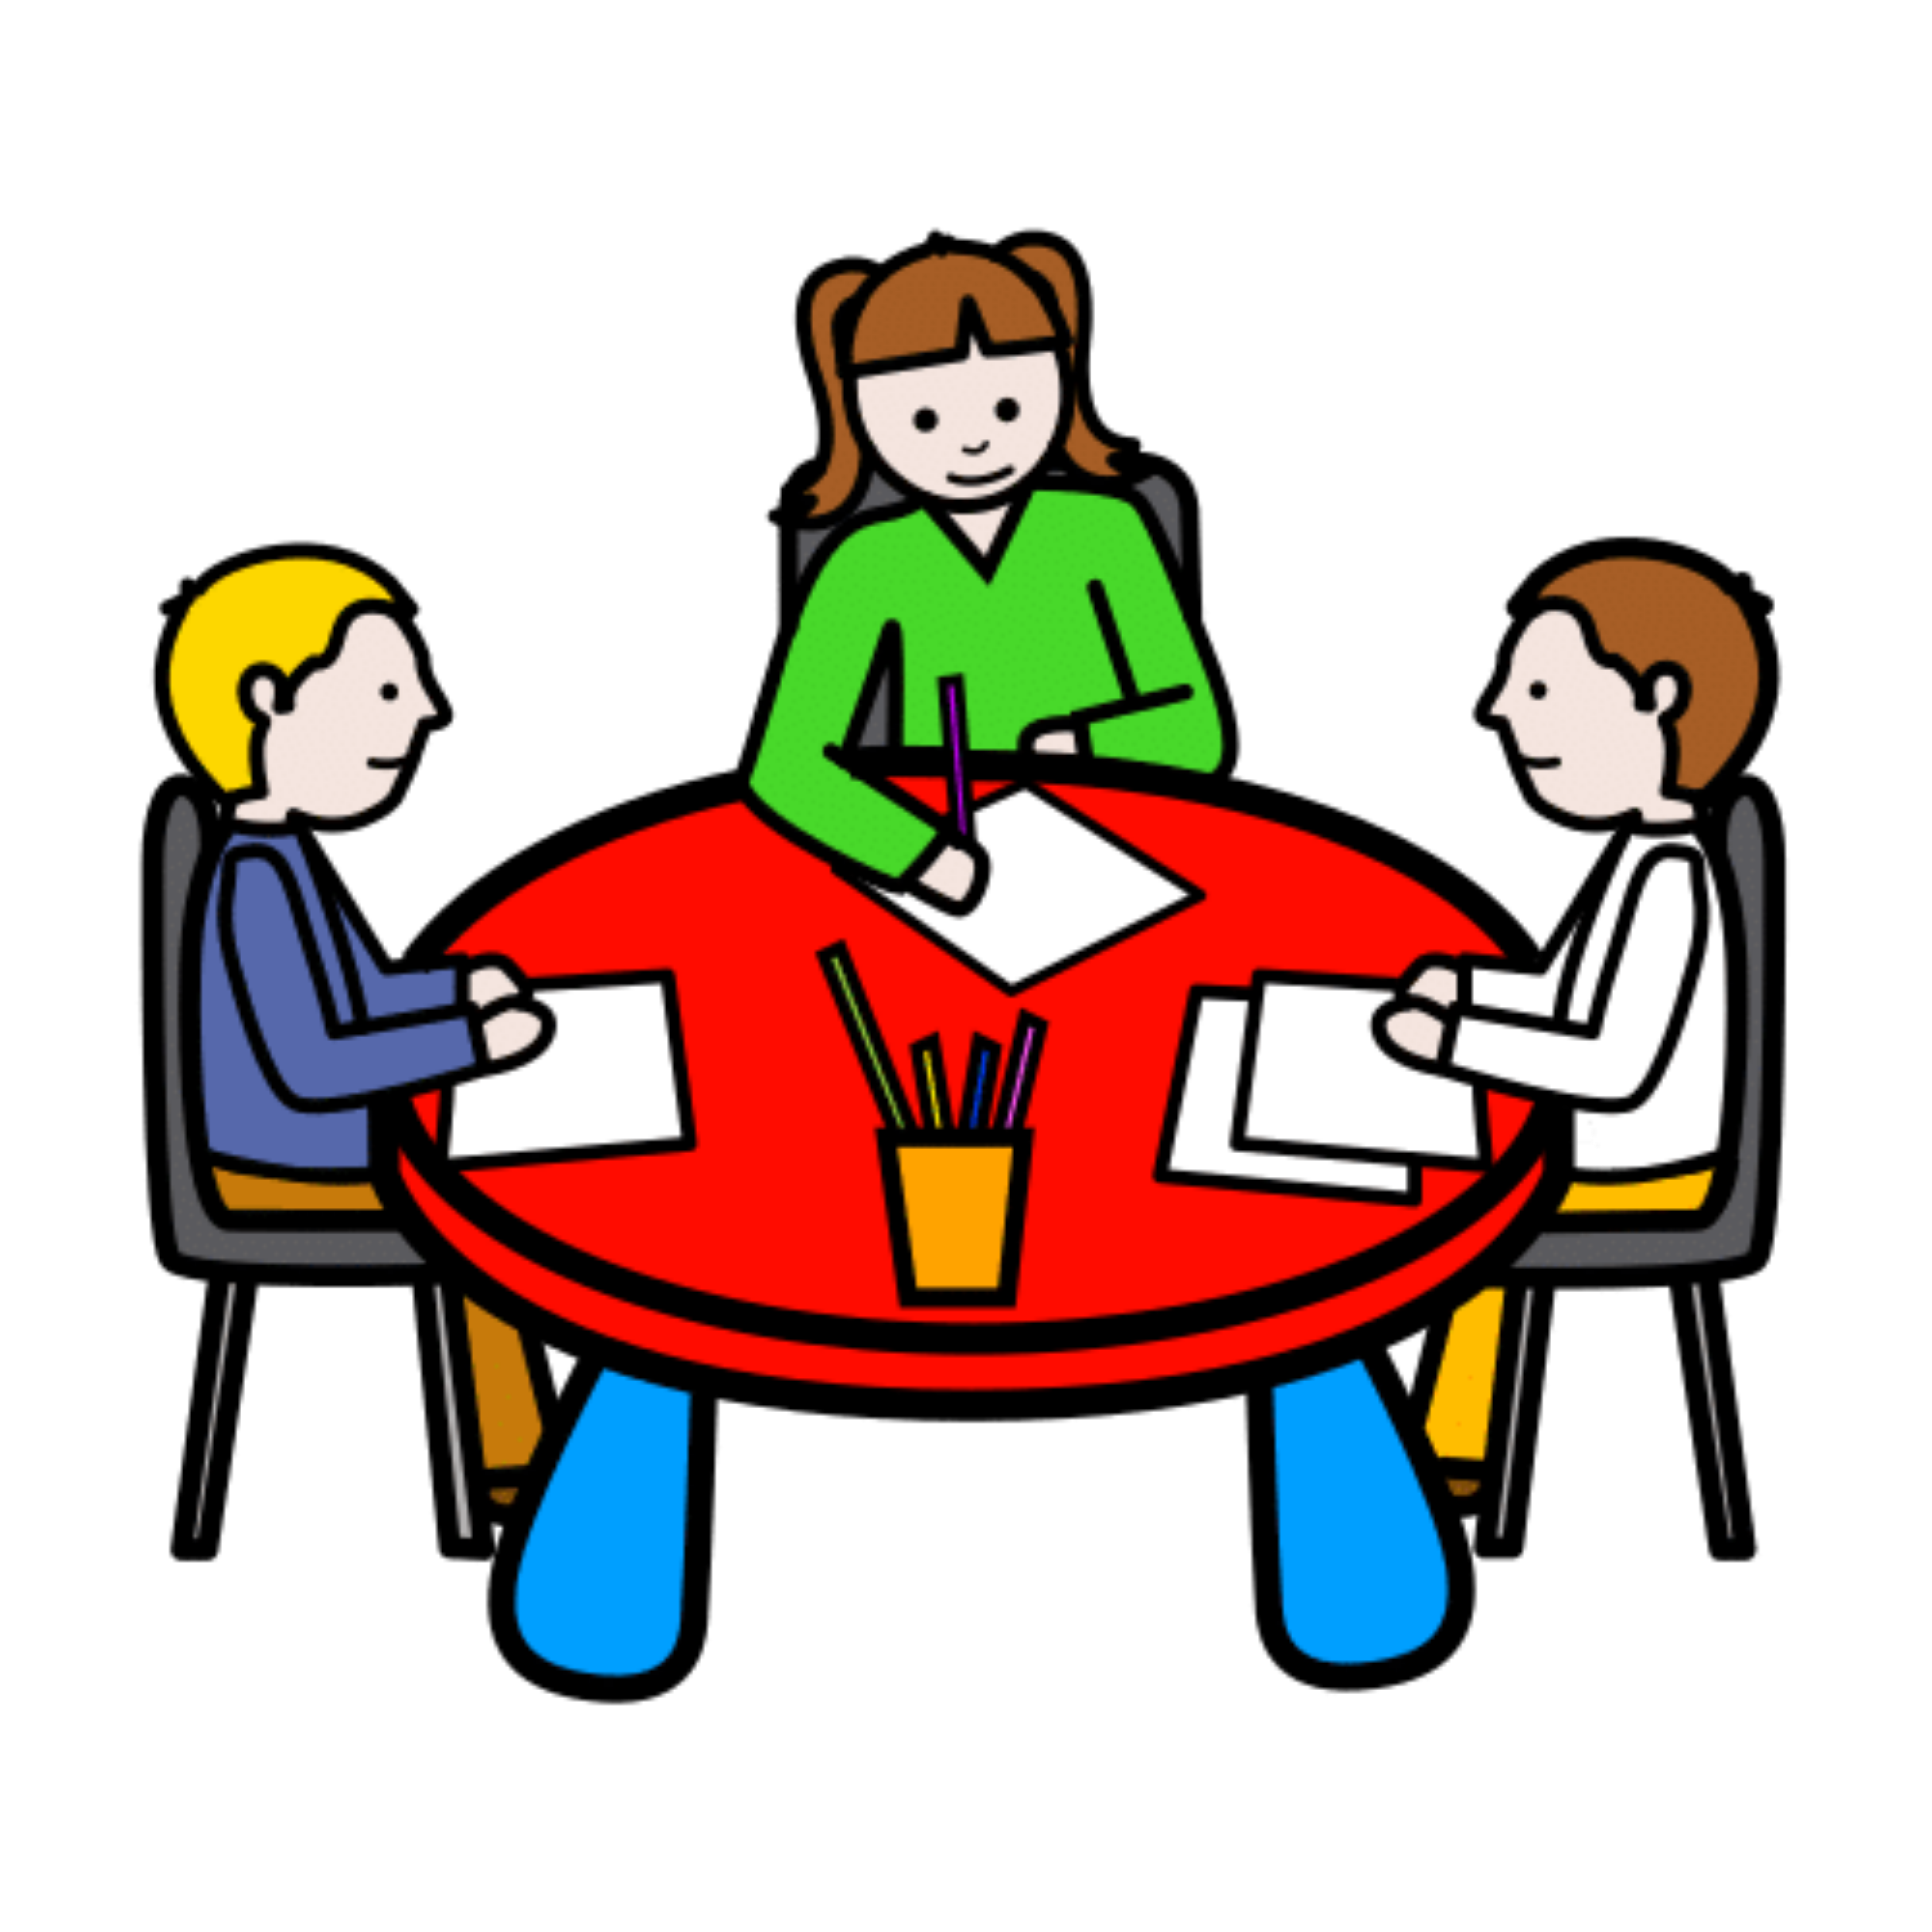 La imagen muestra a varias personas sentadas alrededor de una mesa, trabajando